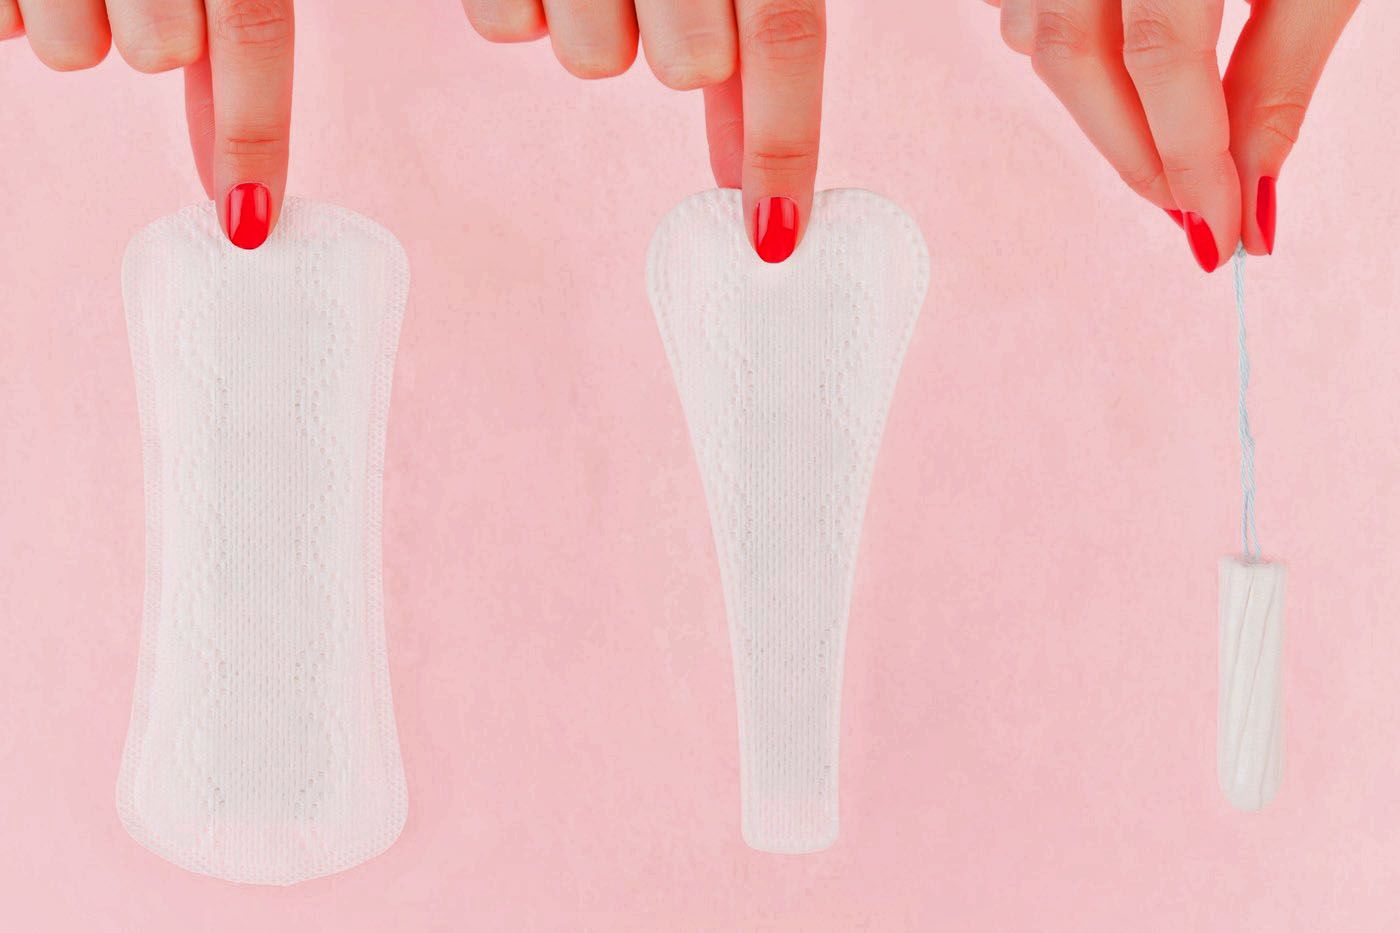 Co muze ovlivnit menstruaci?